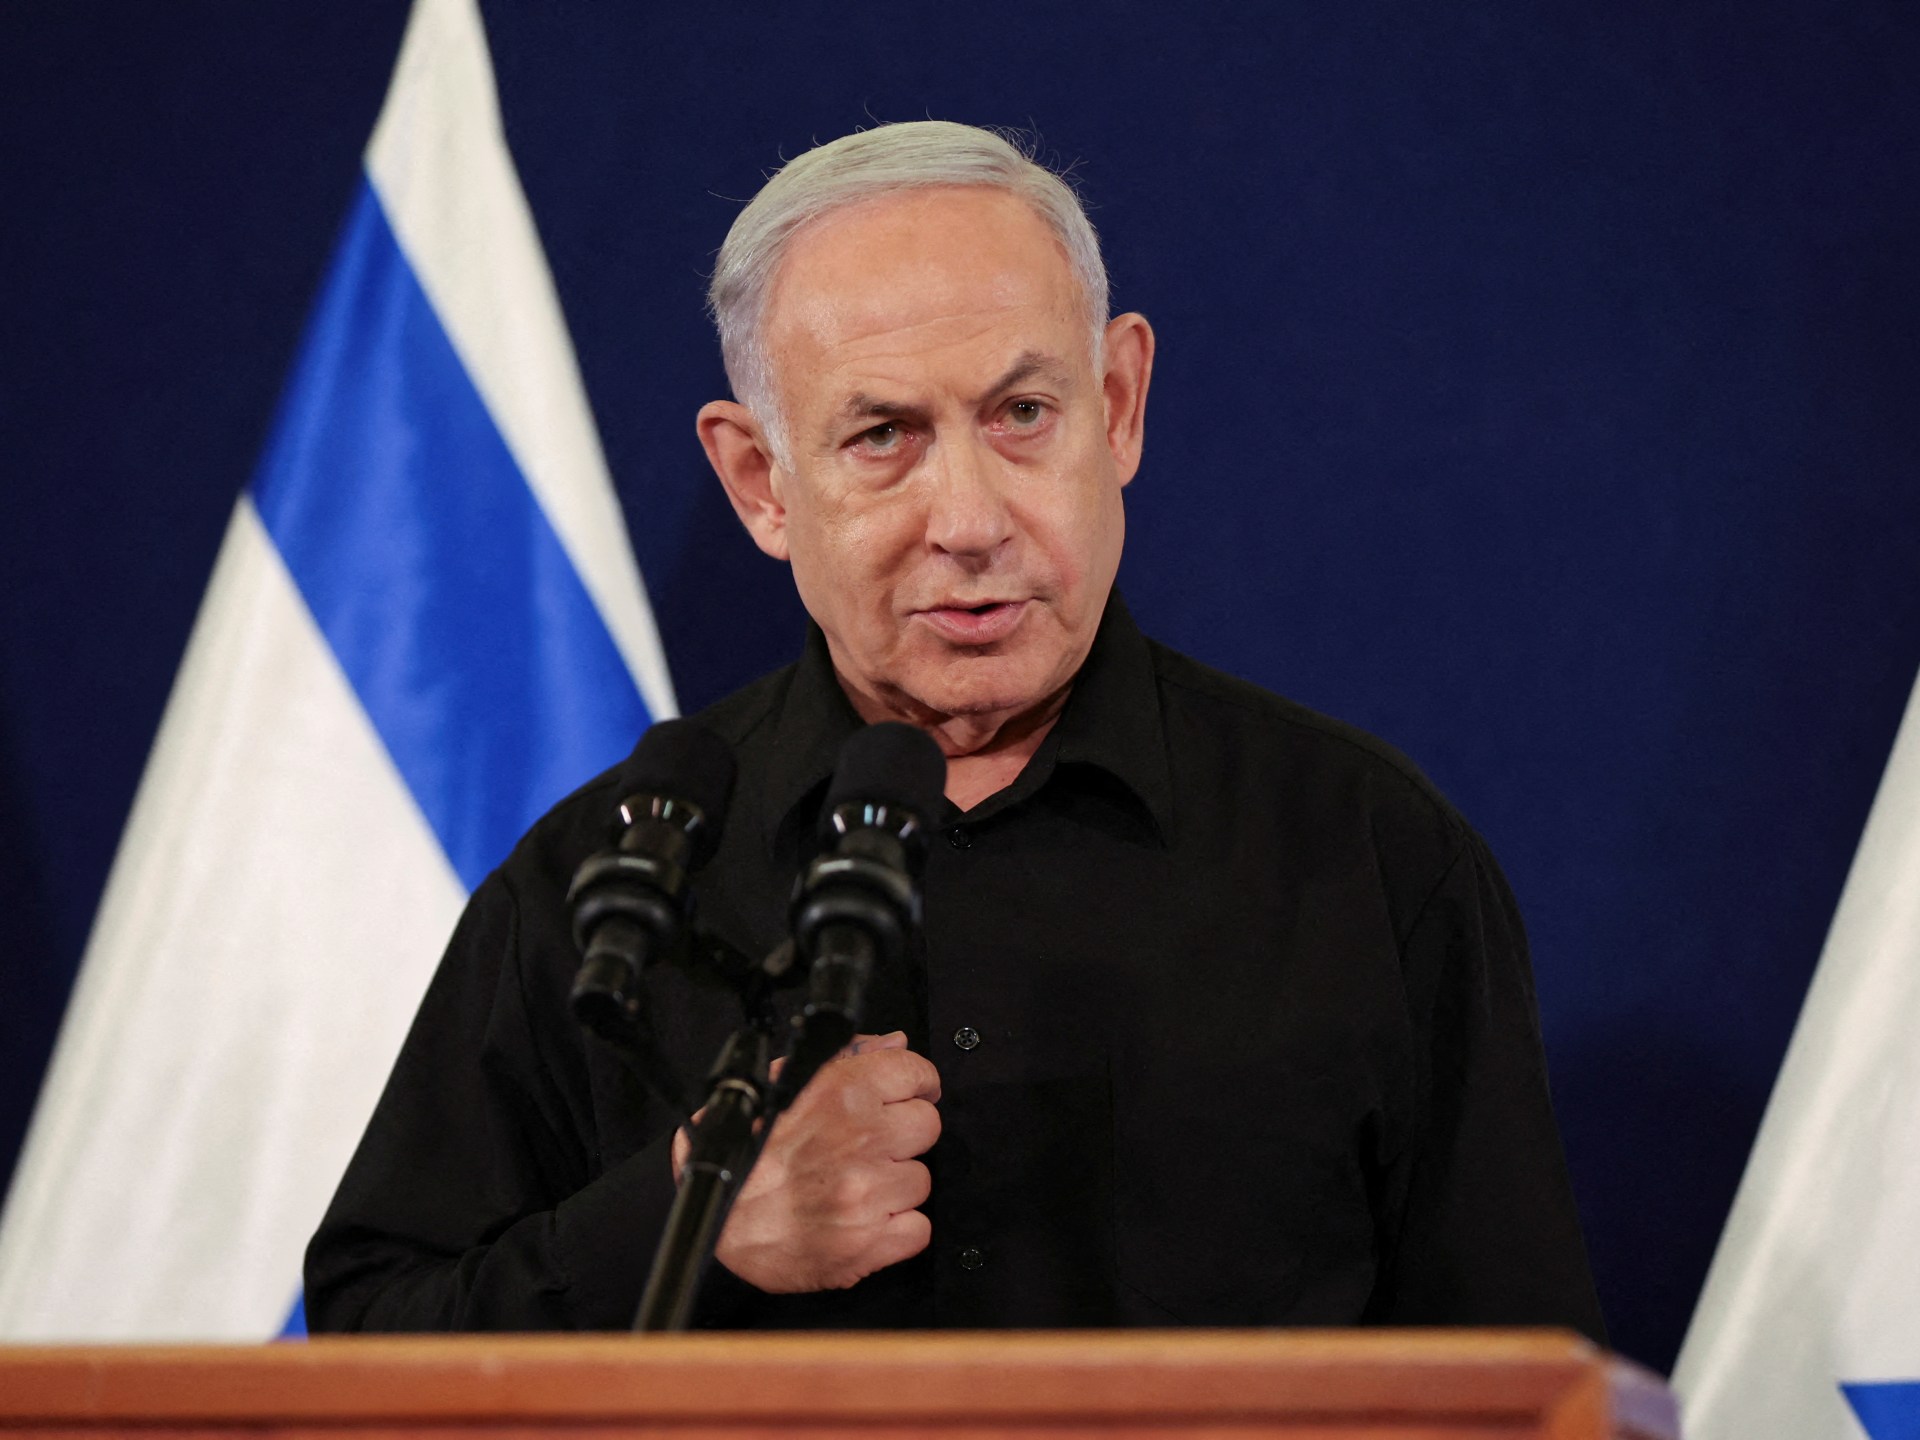 Netanyahu dice que la guerra entra en la “segunda fase” con la incursión de las fuerzas israelíes en Gaza  Noticias del conflicto palestino-israelí